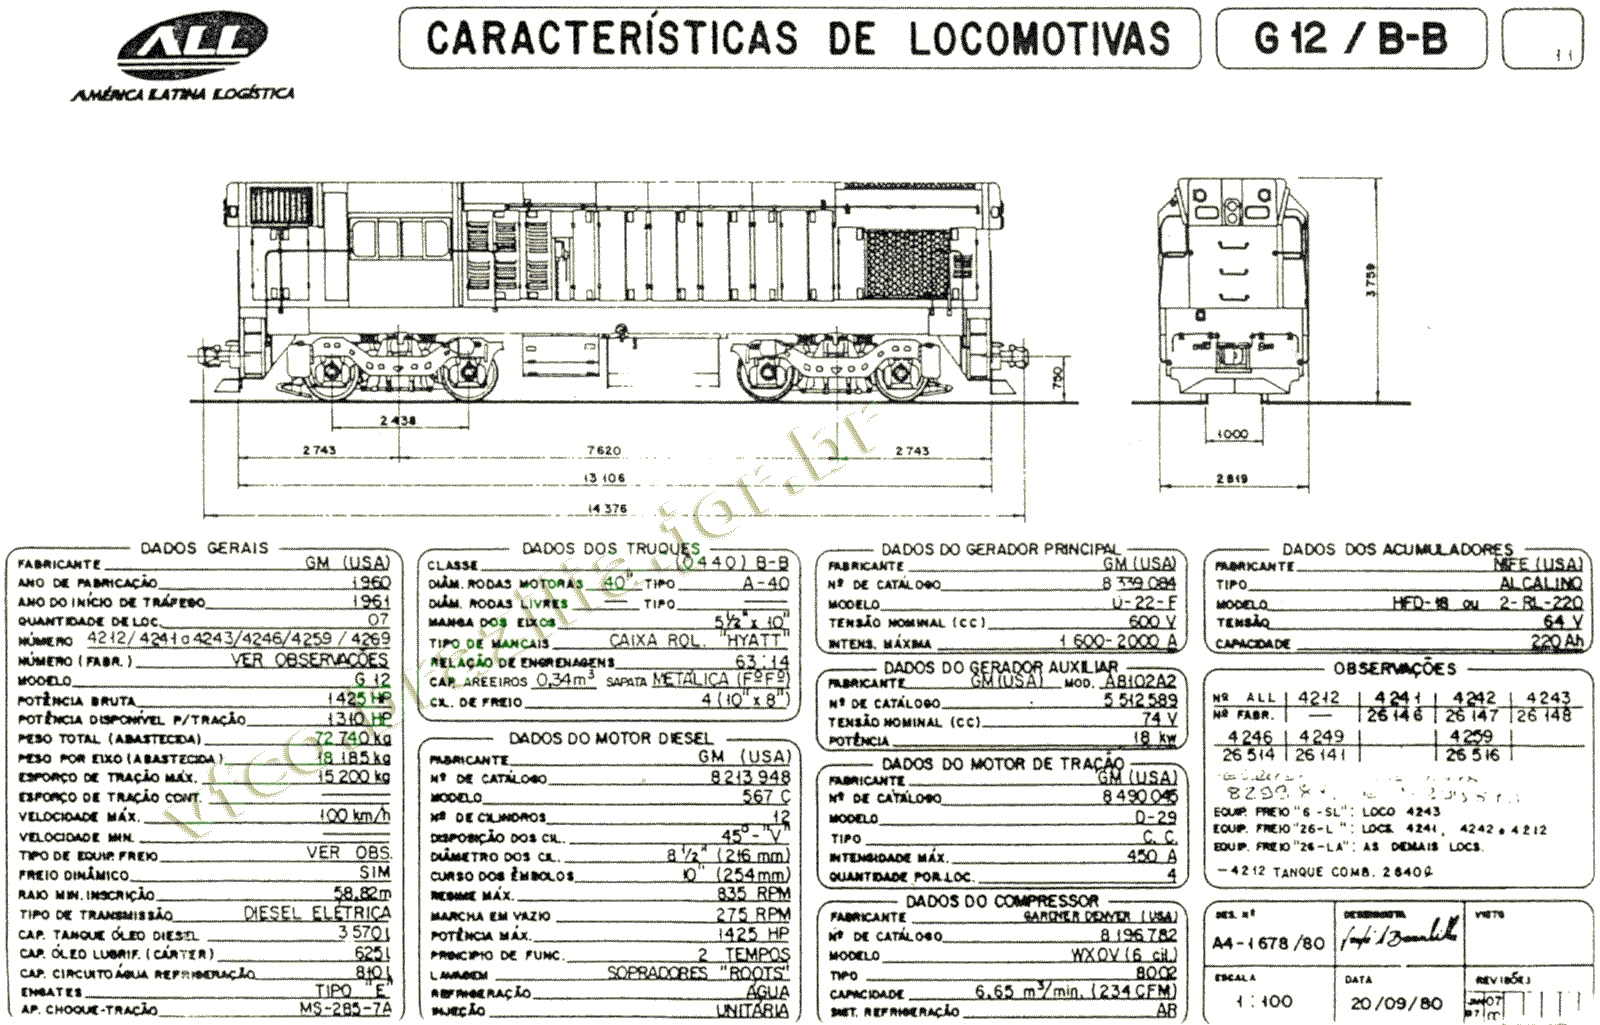 Desenho e medidas das Locomotivas G12 nº 4212-4269 da ferrovia ALL